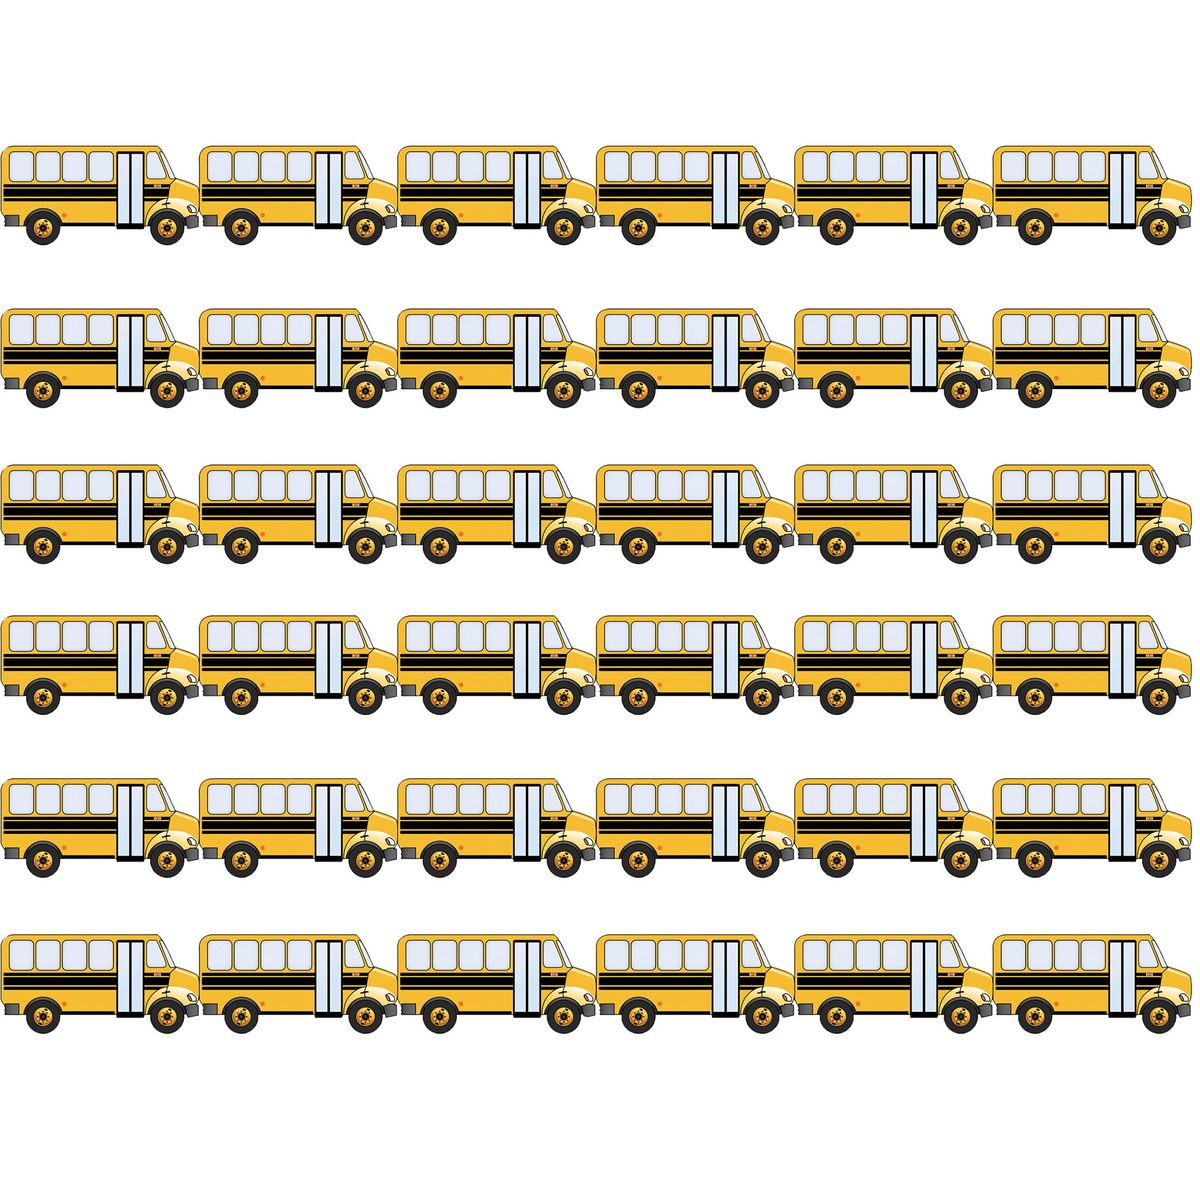 [RDY] [送料無料] Hygloss スクールバスダイカットボーダー 72枚組 [楽天海外通販] | Hygloss School Bus Die Cut Border, 72 Pieces